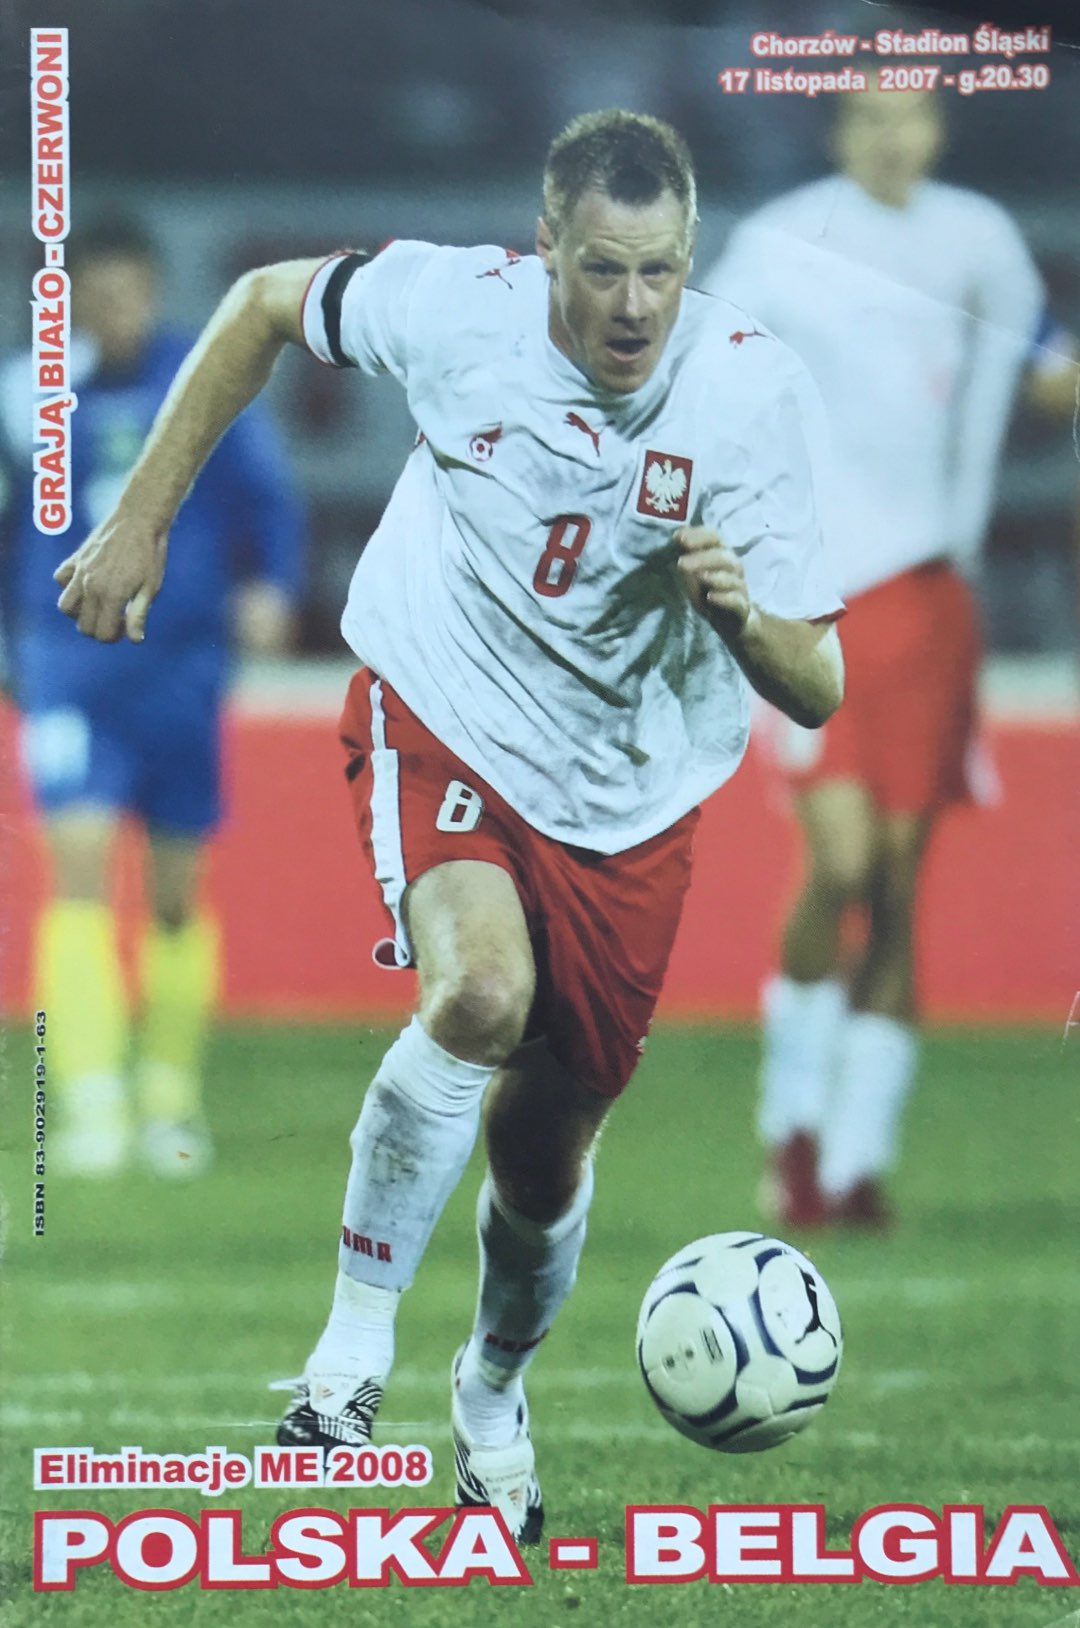 Program meczowy Polska - Belgia 2:0 (17.11.2007).